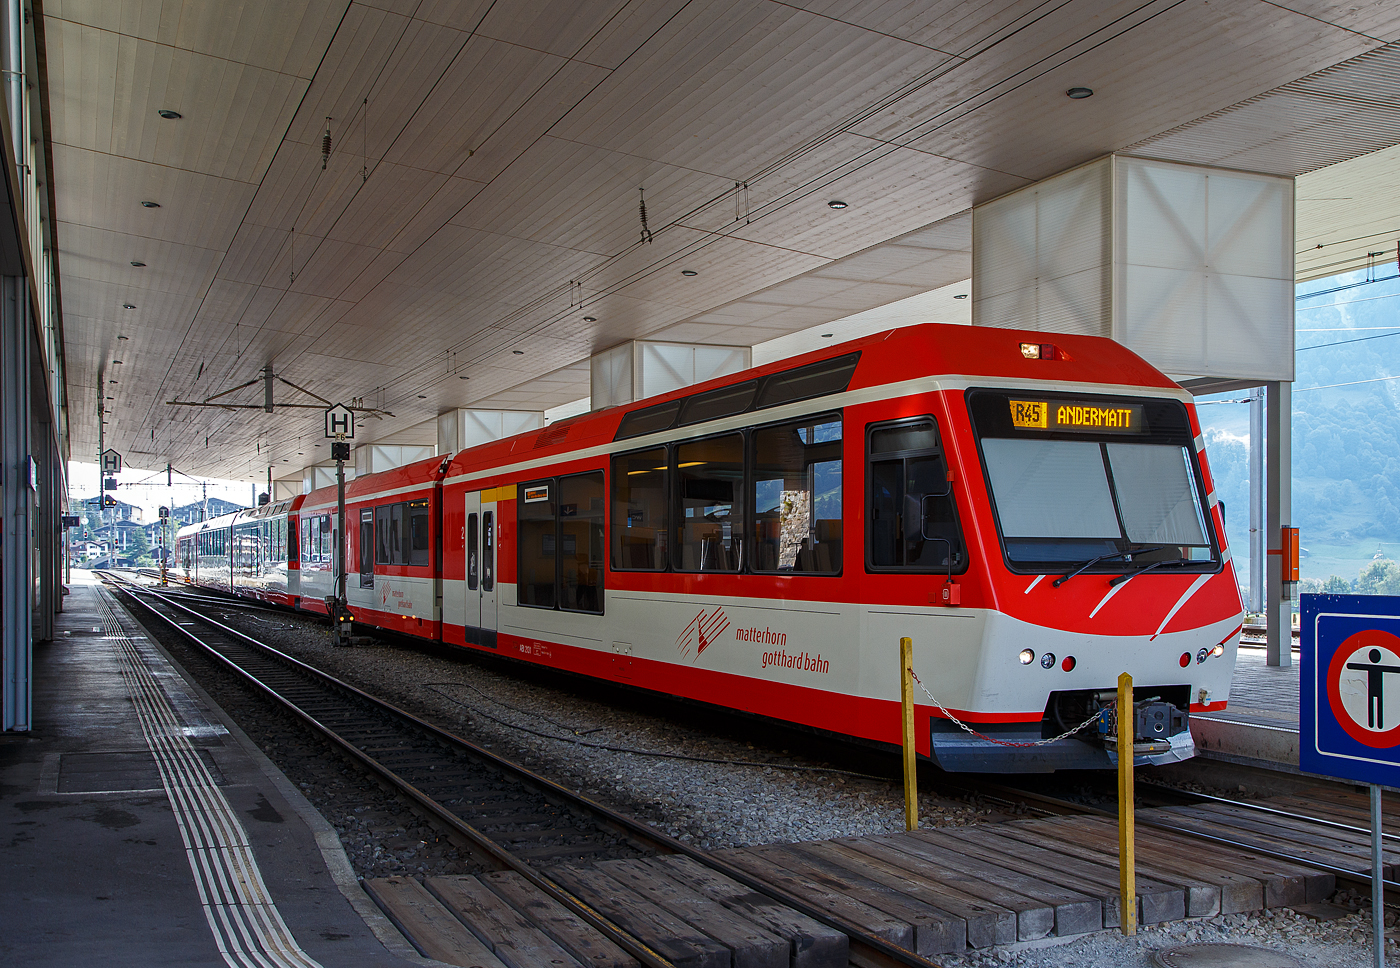 Der „KOMET“ MGB ABDeh 4/8 2025 ein Stadler Niederflur-Panoramatriebzug mit Zahnrad- und Adhsionsantrieb steht am 07.09.2021, mit vorangestellten Niederflur-Gelenksteuerwagen ABt 2131als Regionalzug (R 45) im Bahnhof Disentis/Mustr zur Abfahrt nach Andermatt bereit. 

Diese Triebzge, wie auch der ABDeh 4/10 un  der BDSeh 4/8 sind von Stadler gebaute elektrische Schmalspur-Niederflur-Panoramatriebzge, das Krzel steht fr „KOmfortabler MEterspur-Triebzug“.  Auch die Niederflurgelenksteuerwagen wurden 2015 in einer Serie von 4 Stck (ABt 2131 bis 2134) von Stadler fr die MGB fr den Einsatz der Komet-Triebzge gebaut.Ihre Bauweise entspricht so weit wie mglich auch derjenigen der Triebzge. Sie bestehen aus zwei Wagenksten. Der mit Fhrerstand weist nur die 1. Wagenklasse und ein Drehgestell auf,  er sttzt sich auf den zweiten Wagenkasten mit 2. Wagenklasse, WC und zwei Drehgestellen ab.

Der ABDeh 4/8 ist ein dreiteiliger Triebzug mit 1. und 2. Klasseabteil. Sie sind auf dem ganzen Stammnetz der MGBahn unterwegs sind. Der dreiteilige Komet hat auch die Zulassung fr grere Steigungen (Maximalsteigung 179 Promille) aufweisende Schllenenbahn (Andermatt–Gschenen). Die vierteiligen Kometen (ABDeh 4/10) haben diese Zulassung nicht.

Jeder Triebzug besteht aus einem hochflurigen, einstiegslosen, vierachsigen (angetriebenen) Triebwagen, davor und dahinter jeweil ein antriebsloses Element mit Niederflureinstiegen aufgesattelt sind.Der Triebwagen verfgt ber zwei zweiachsige Drehgestelle mit je einem Fahrmotor pro Achse. Der Antrieb erfolgt im reinen Adhsionsbetrieb ber die acht Rder der Triebdrehgestelle und im Zahnradbetrieb zustzlich ber vier Zahnrder fr die bei der MGB verwendete Zahnstangen Systems Abt. Die aufgesattelten Elemente besitzen jeweils nur ein Lauf-/Bremsdrehgestell am ueren Wagenende und sttzen sich am anderen Ende auf den Mittelwagen/Triebwagen ab. Alle Drehgestelle sind luftgefedert. Die hochflurigen Bereiche des Triebzuges verfgen ber Panoramafenster. 

Dank einer automatischen Mittelpufferkupplung vom Typ FK (Schwab FK-9-6) knnen die Triebzge in Mehrfachtraktion der unterschiedlichen KOMETen und den passenden Steuerwagen (Niederflur-Gelenksteuerwagen ABt 2131–34 und Gepck-Steuerwagen BDkt 2231–33) fahren, was eine Anpassung an die Kapazittsbedrfnisse ermglicht.



TECHNISCHE DATEN des ABDeh 4/8:
Anzahl Fahrzeuge: 8 Stck (Nummer 2021-2028)
Spurweite:  1.000 mm
Achsanordnung: 2‘Bo‘Bo‘2‘
Lnge ber Kupplung: 56.664 mm
Fahrzeugbreite:  2.650 mm
Fahrzeughhe: 3.950 mm
Dienstgewicht, tara: 77,0 t
Achsabstand im Triebdrehgestell: 2.540 mm
Achsabstand im Lauf-/Bremsdrehgestell: 1.800 mm
Triebraddurchmesser (neu): 796 mm
Laufraddurchmesser (neu): 685 mm
Teilkreis-Durchmesser Zahnrad: 688 mm
Fubodenhhe Niederflurbereiche: 415 mm
Fubodenhhe Hochflurbereiche: 950 mm bzw. 1100 mm
Einstiegbreite: 1.600 mm
Sitzpltze: 1. Klasse 30 / 2. Klasse 114 
Dauerleistung am Rad: 1.000 kW
Max Leistung am Rad: 1.300 kW
Anfahrzugskraft: 200 kN
Stundenzugkraft: 150 kN
Hchstgeschwindigkeit:  80 km/h (Adhsion) / 40 km/h (Zahnrad)
Zahnradsystem:  Abt (2 Lamellen)
Anzahl Antriebszahnrder: 4
Speisespannung: 11 kV, 16.7 Hz

TECHNISCHE DATEN des ABt (Steuerwagen):
Anzahl Fahrzeuge: 4 Stck (ABt 2131 bis 2134)
Baujahr: 2015
Spurweite:  1.000 mm
Achsanordnung: 2‘+2‘2‘
Lnge ber Kupplung: 
Leergewicht: 35,5 t
Dienstgewicht (max.): 43,2 t
Sitzpltze: 82 (ges. 1. und 2)
Stehpltze: 20

Quellen: Stadler Rail, Wikipedia und eigene Sichtung